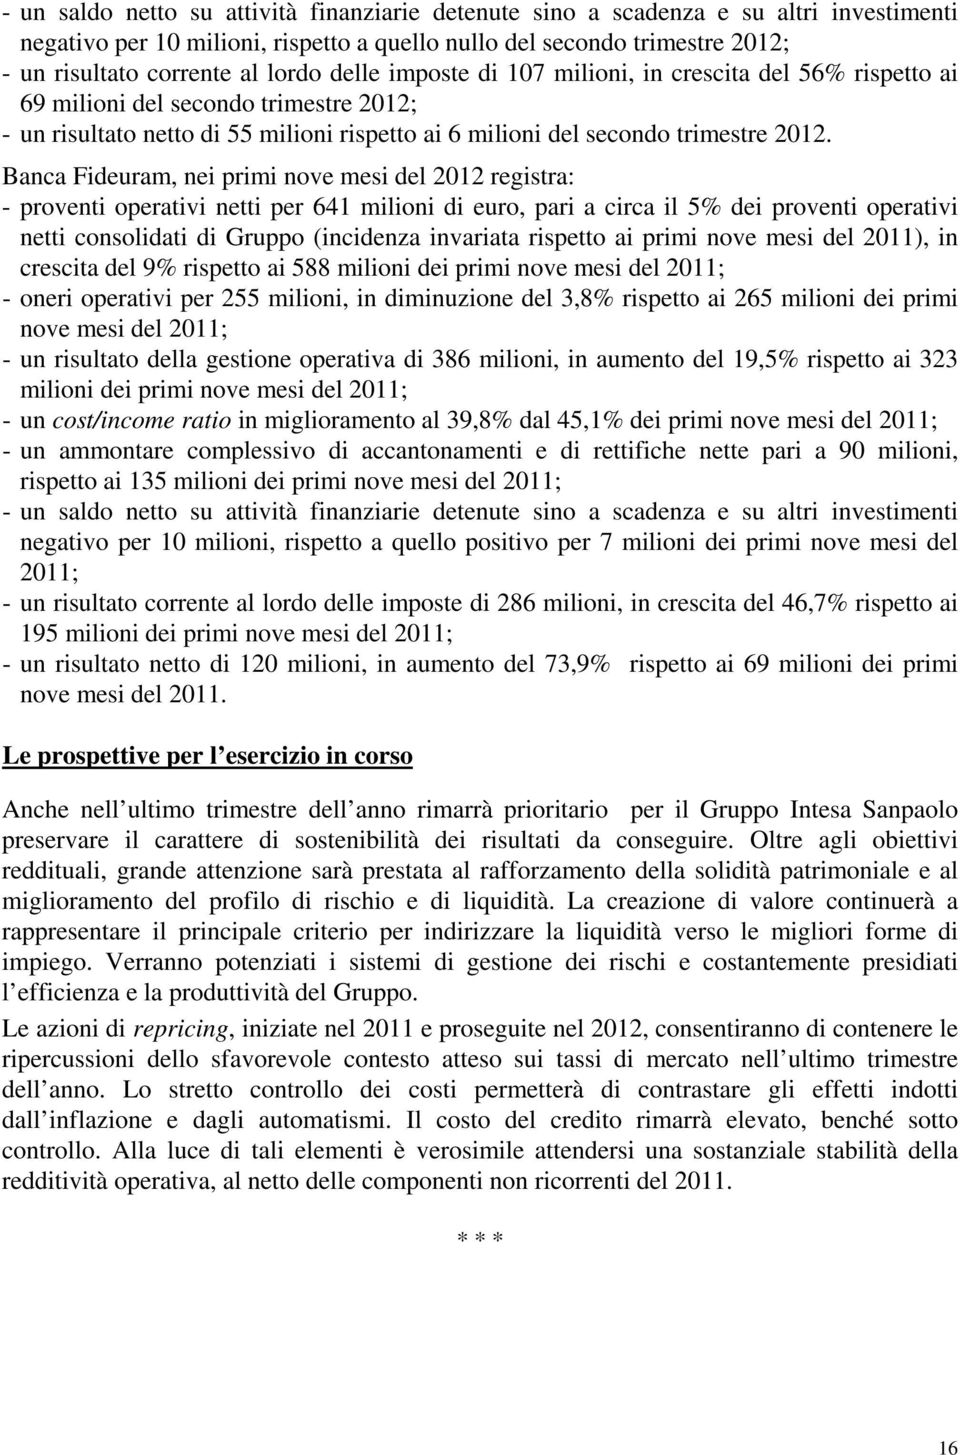 Banca Fideuram, nei primi nove mesi del 2012 registra: - proventi operativi netti per 641 milioni di euro, pari a circa il 5% dei proventi operativi netti consolidati di Gruppo (incidenza invariata